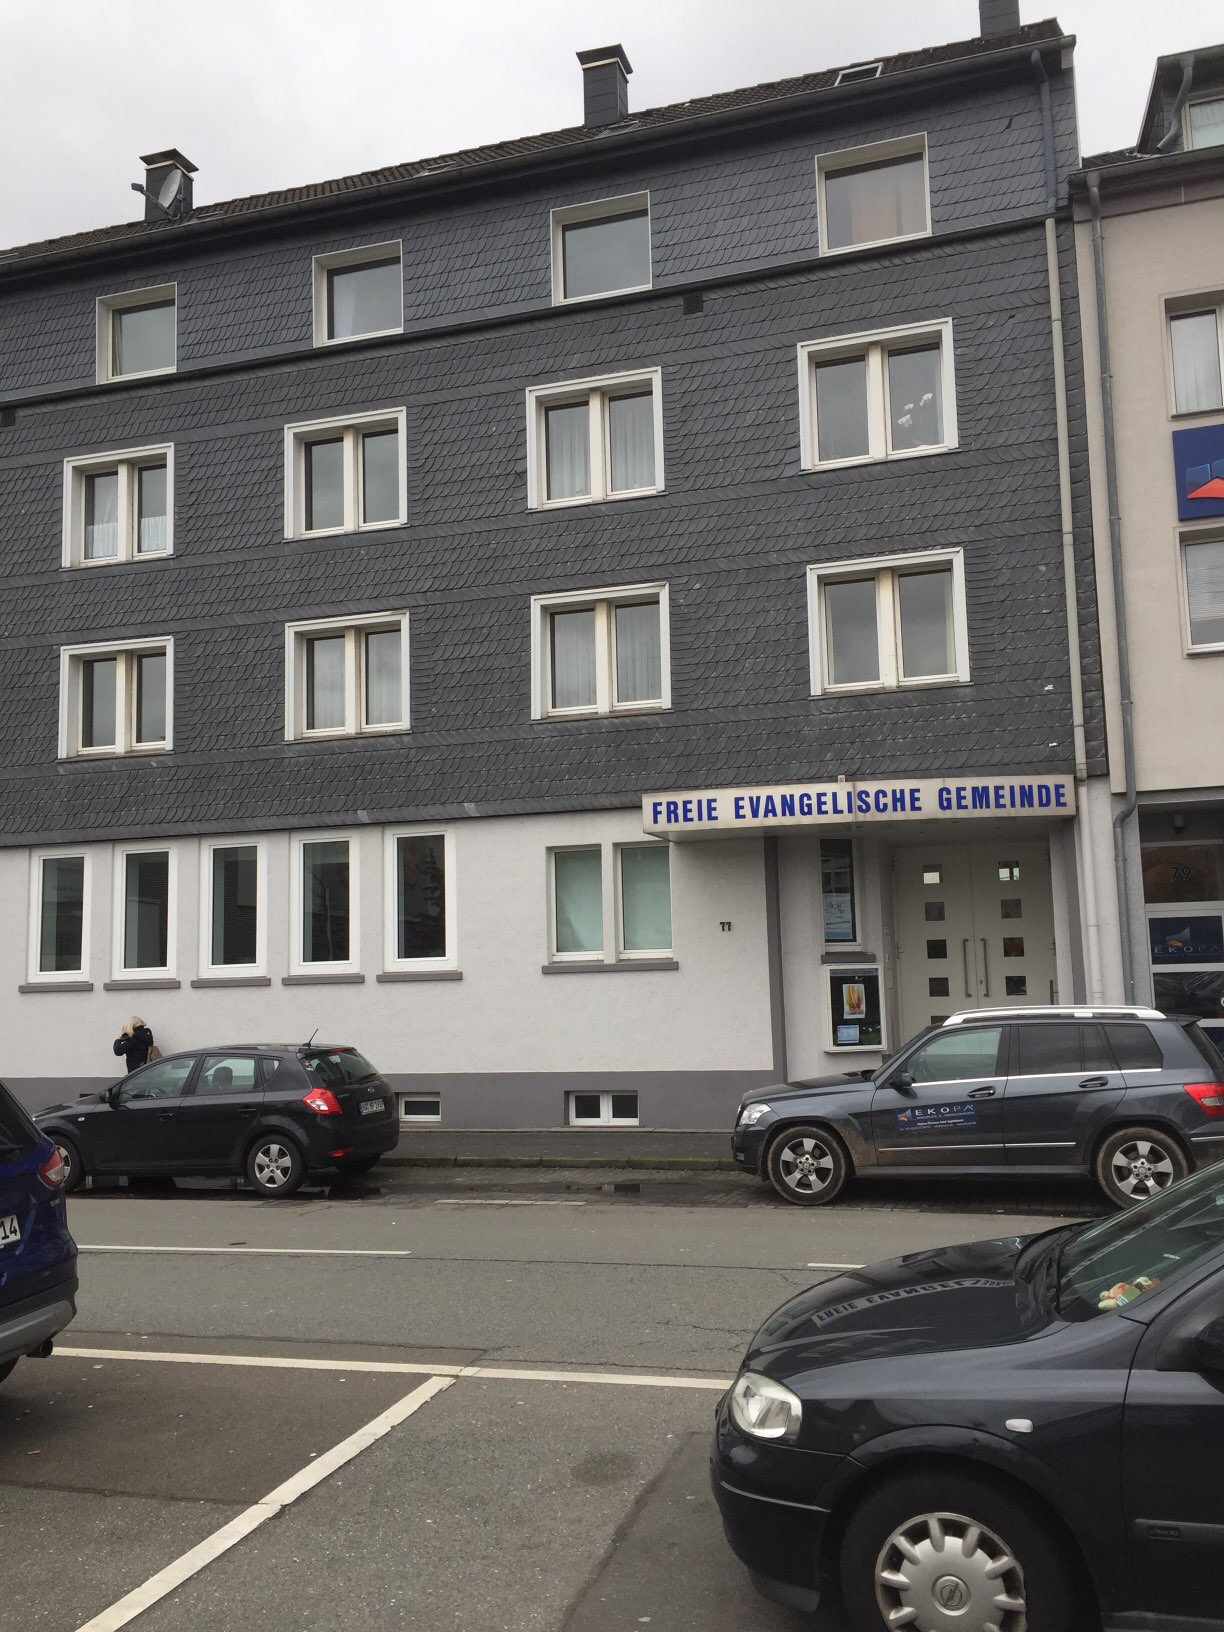 Bild 1 Freie evangelische Gemeinde Barmen in Wuppertal